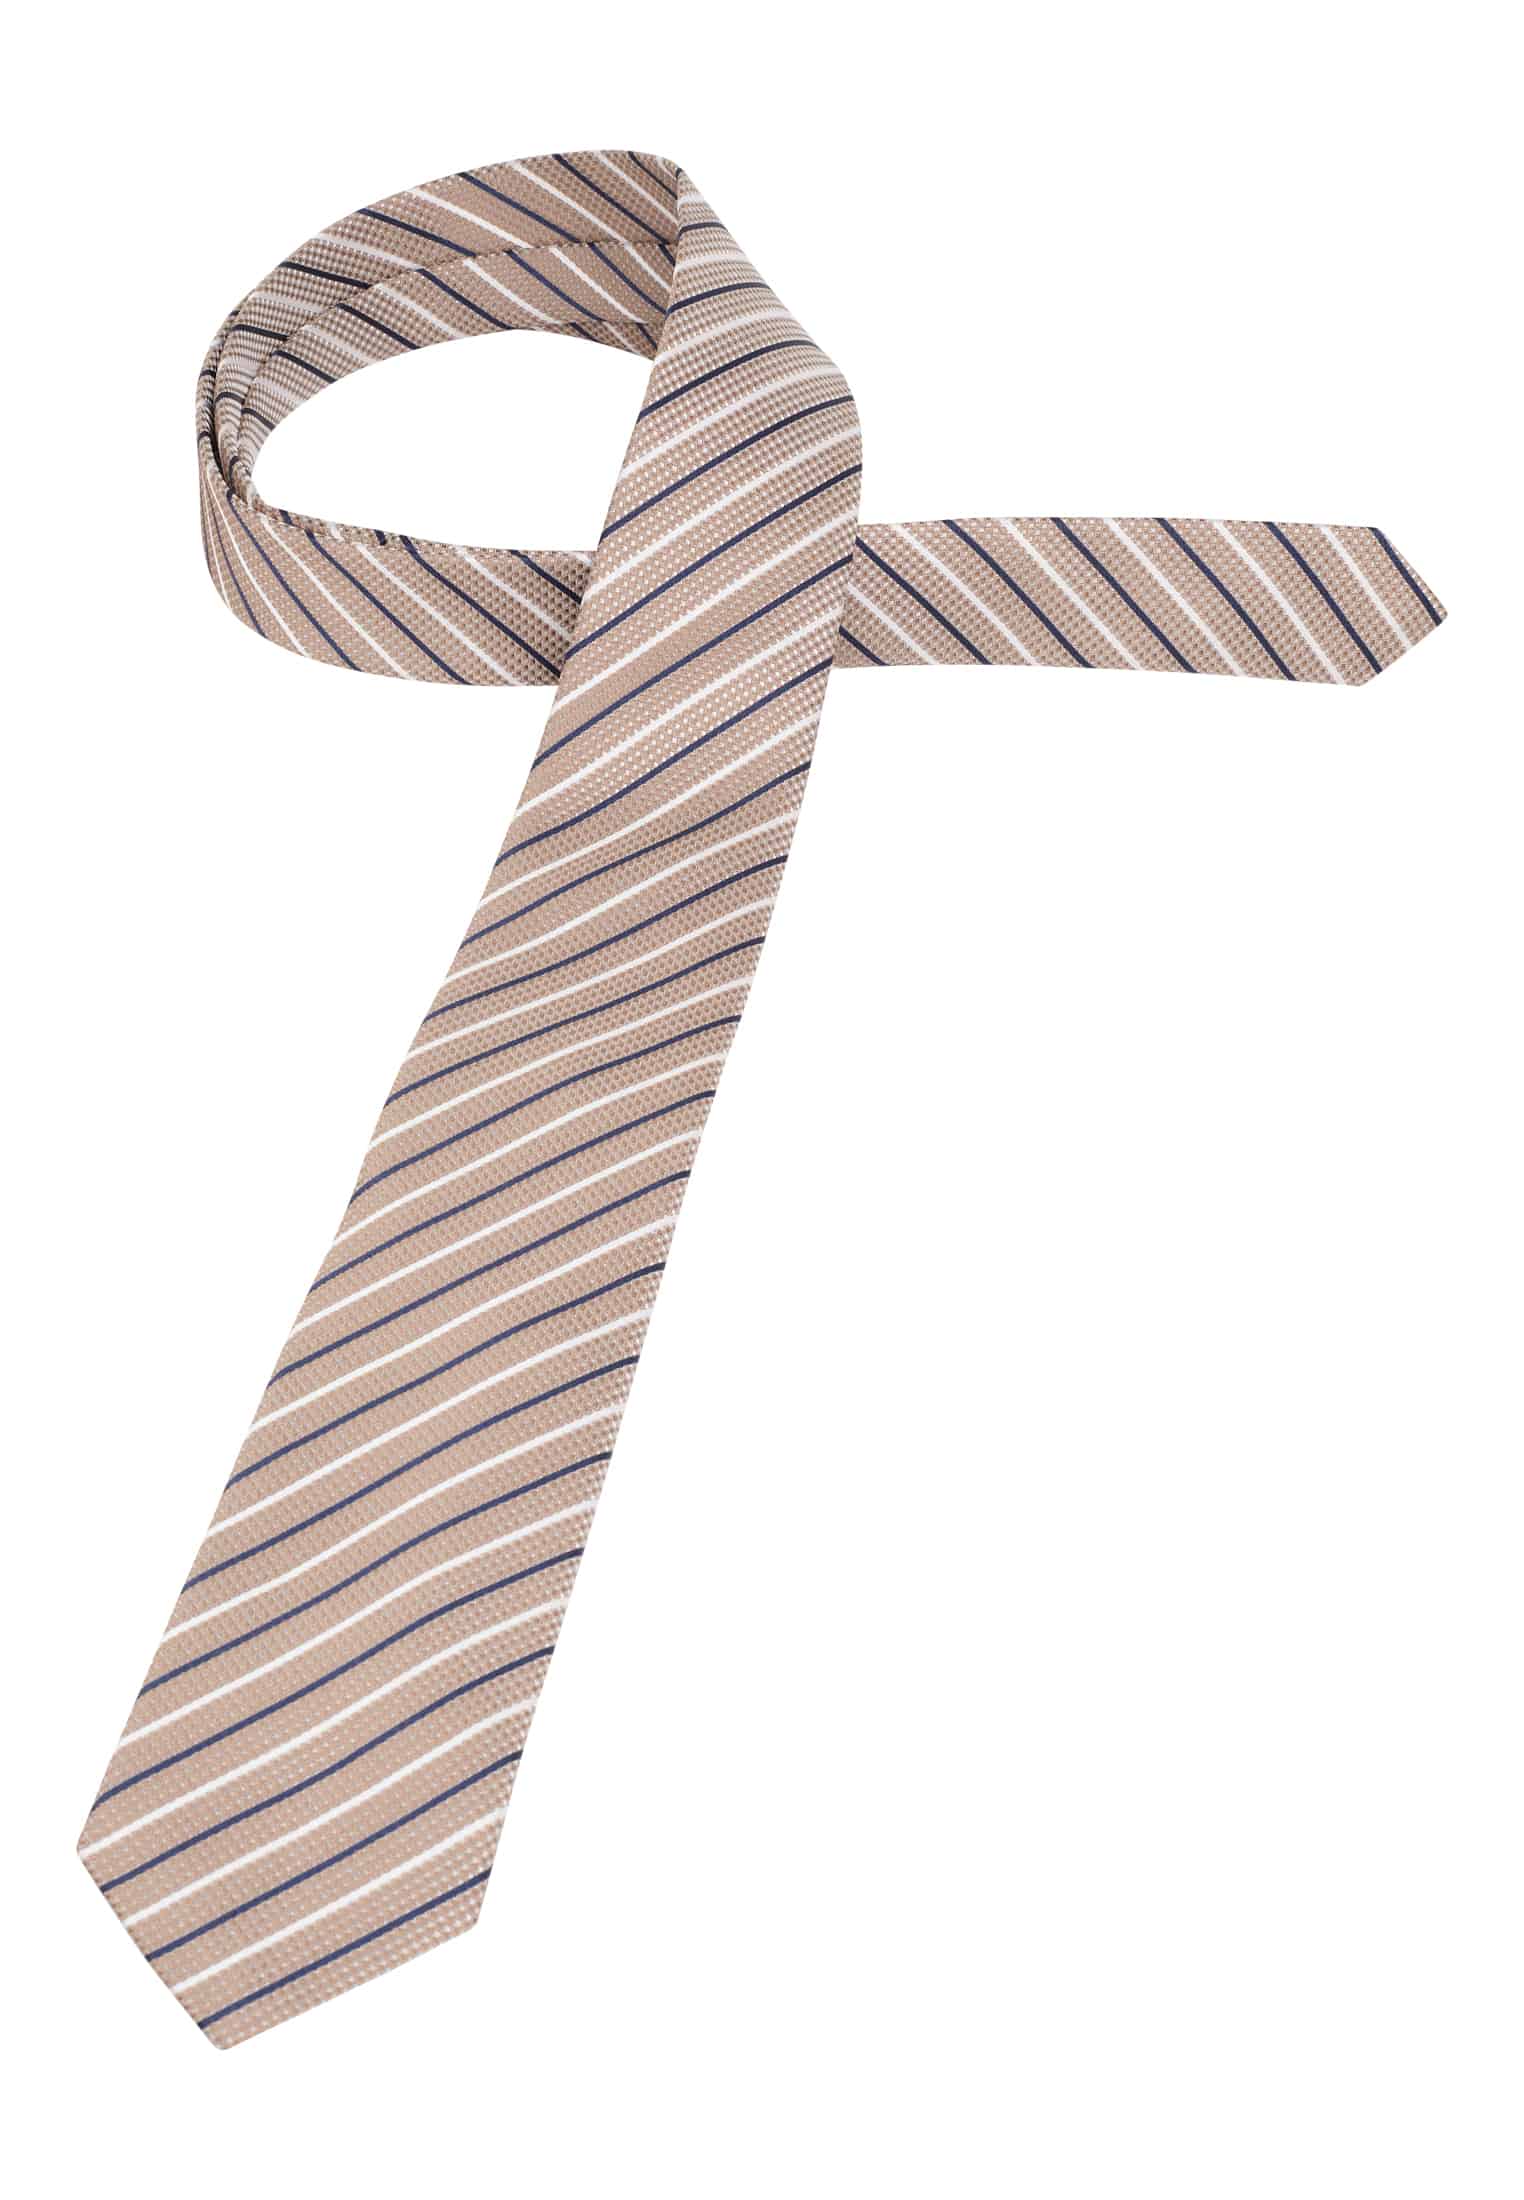 Krawatte in | 142 gestreift beige 1AC02008-02-01-142 beige | 